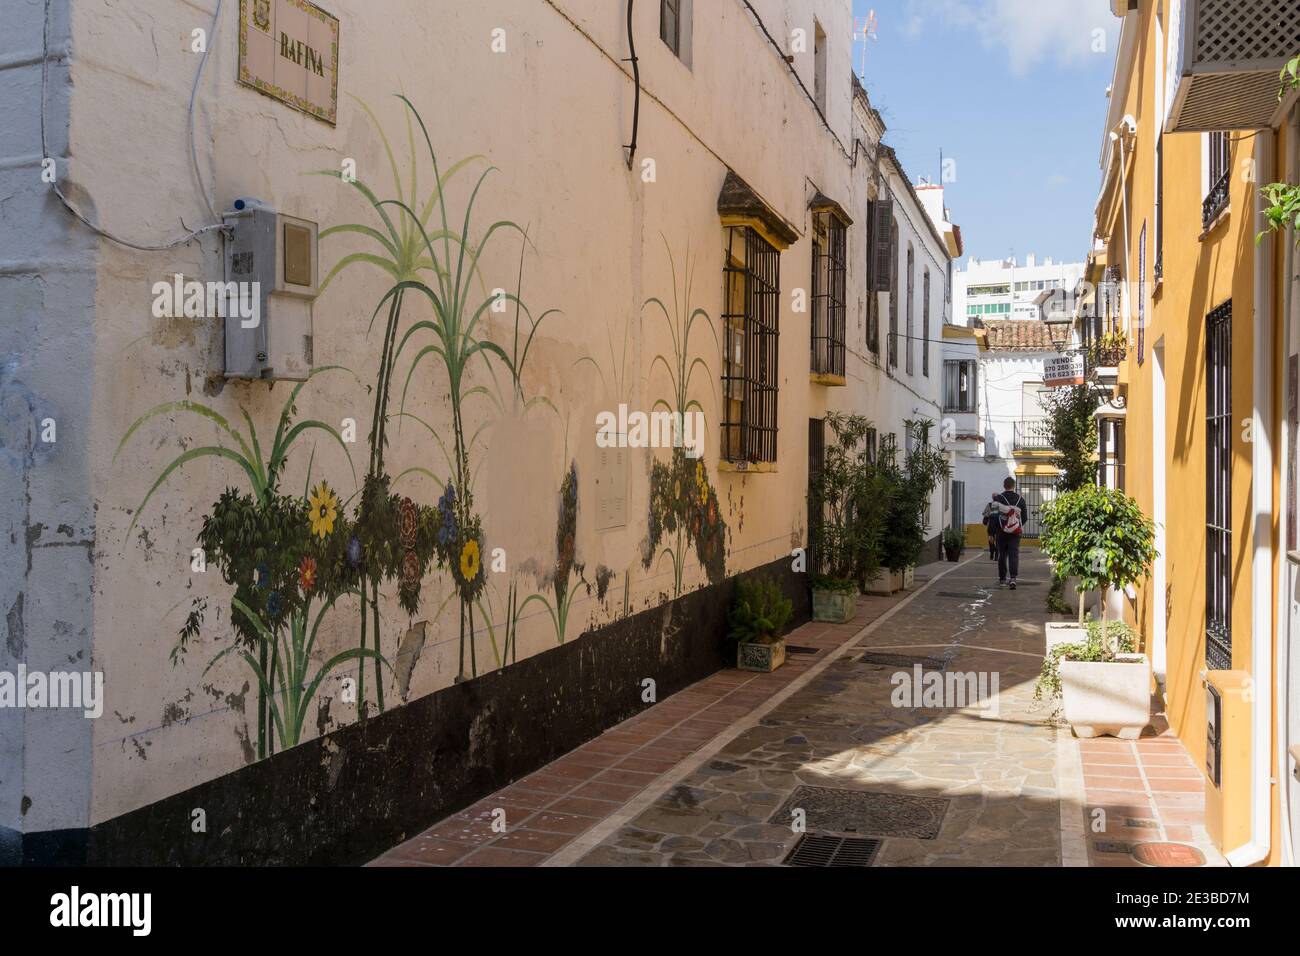 Rue pittoresque et étroite dans la vieille ville, Marbella, Andalousie, Espagne Banque D'Images